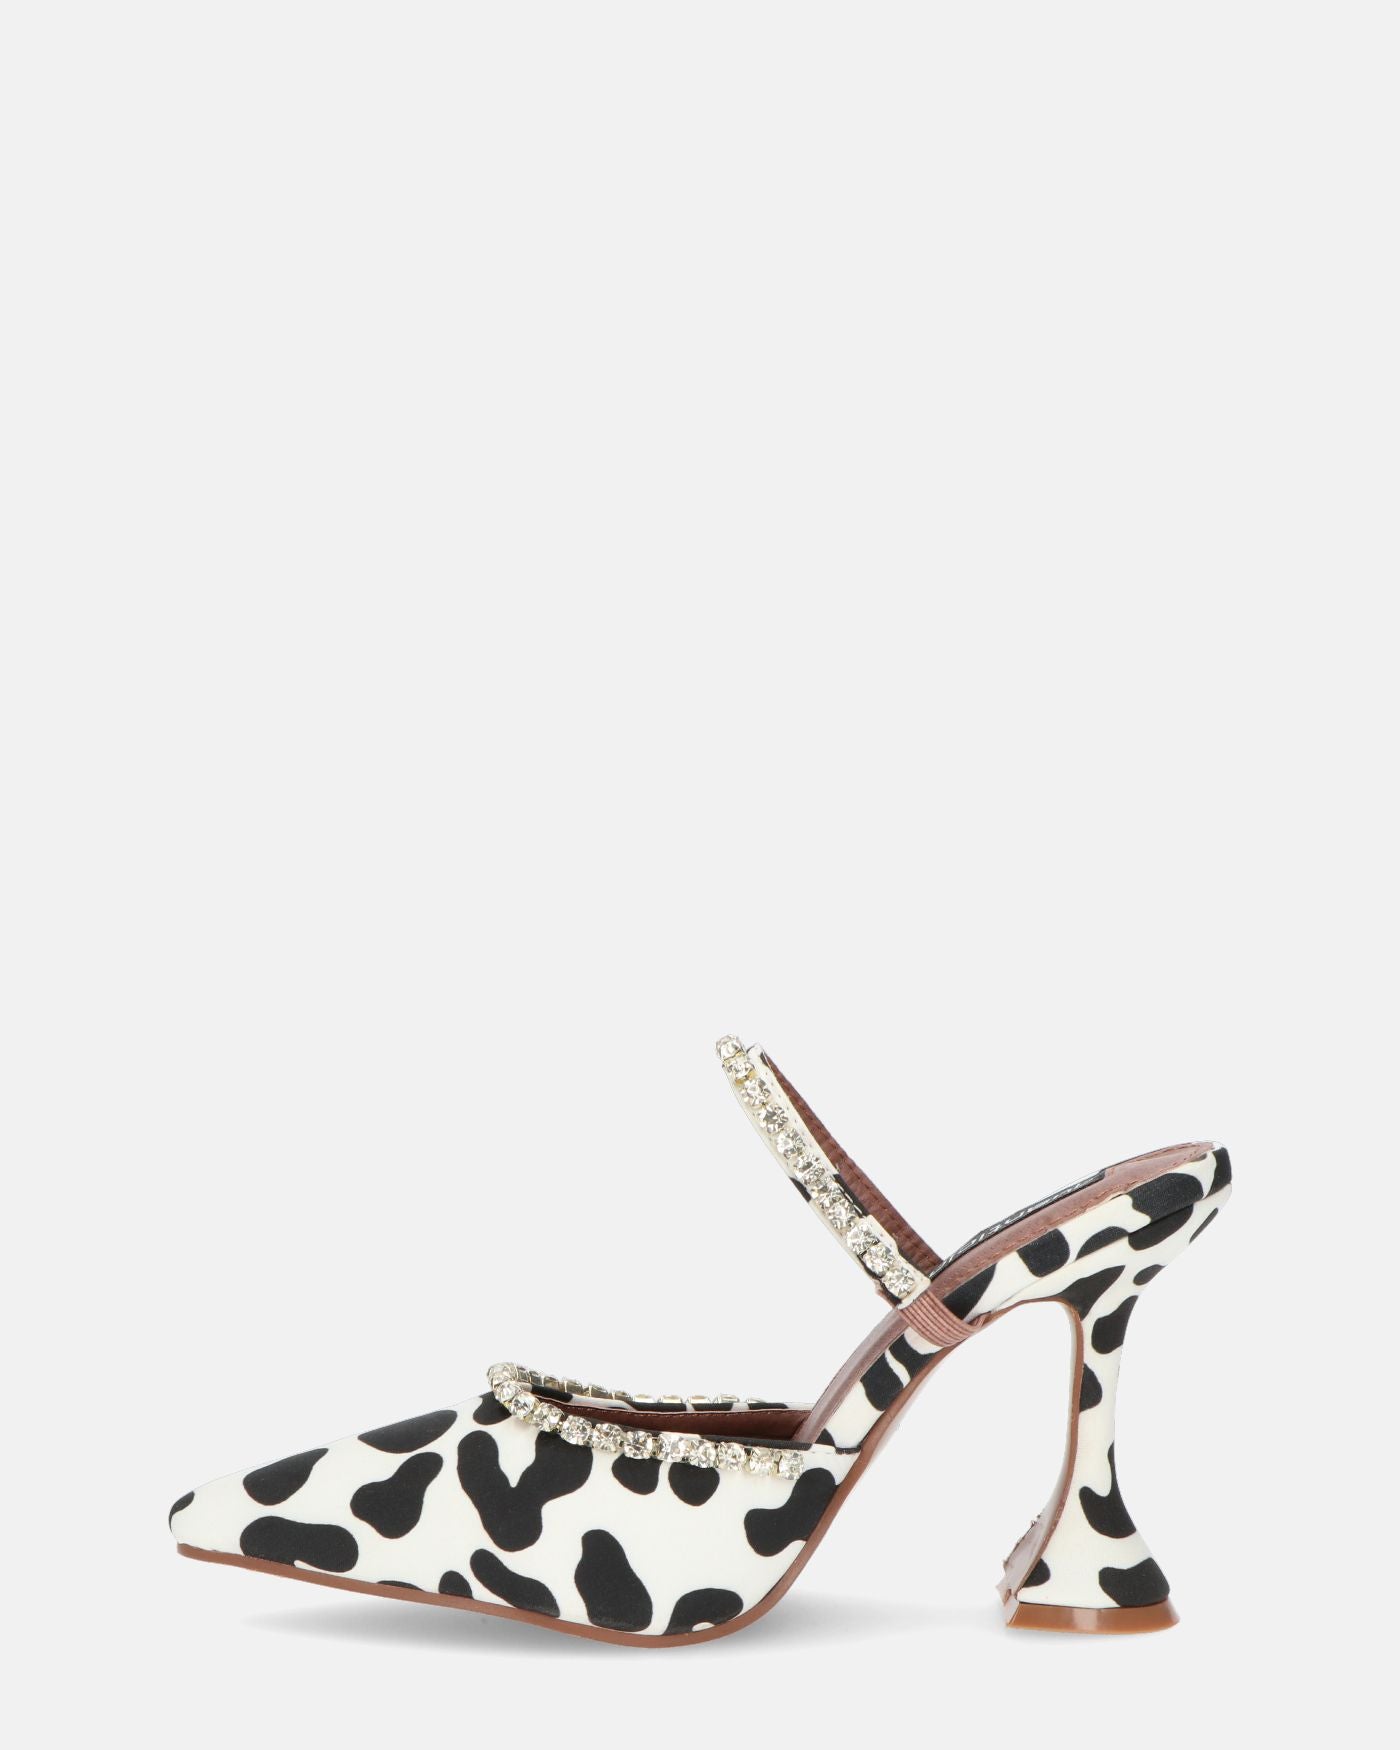 PERAL - zapato de tacón en estampado de leopardo blanco y negro con gemas